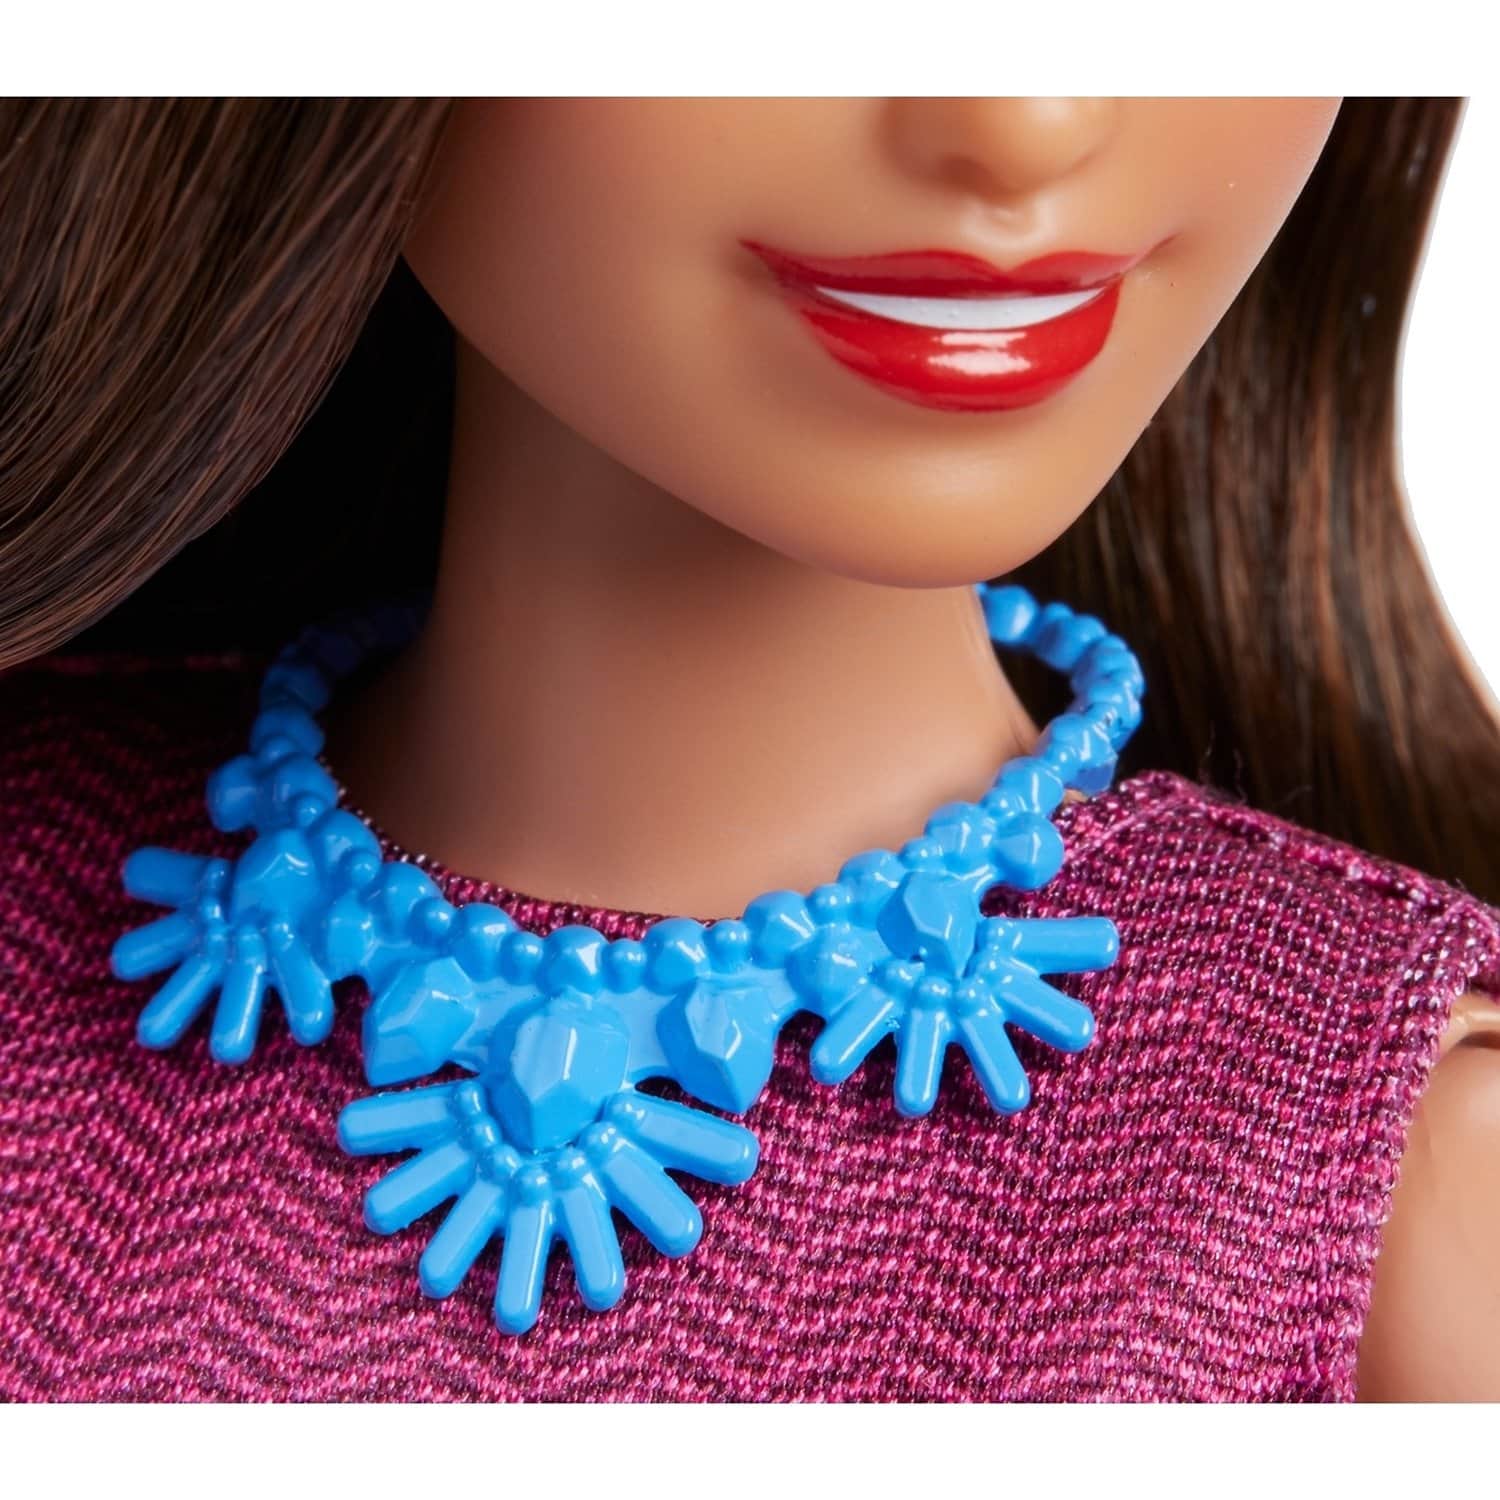 Кукла Barbie Кем быть? Ведущая новостей, 29 см, GFX27